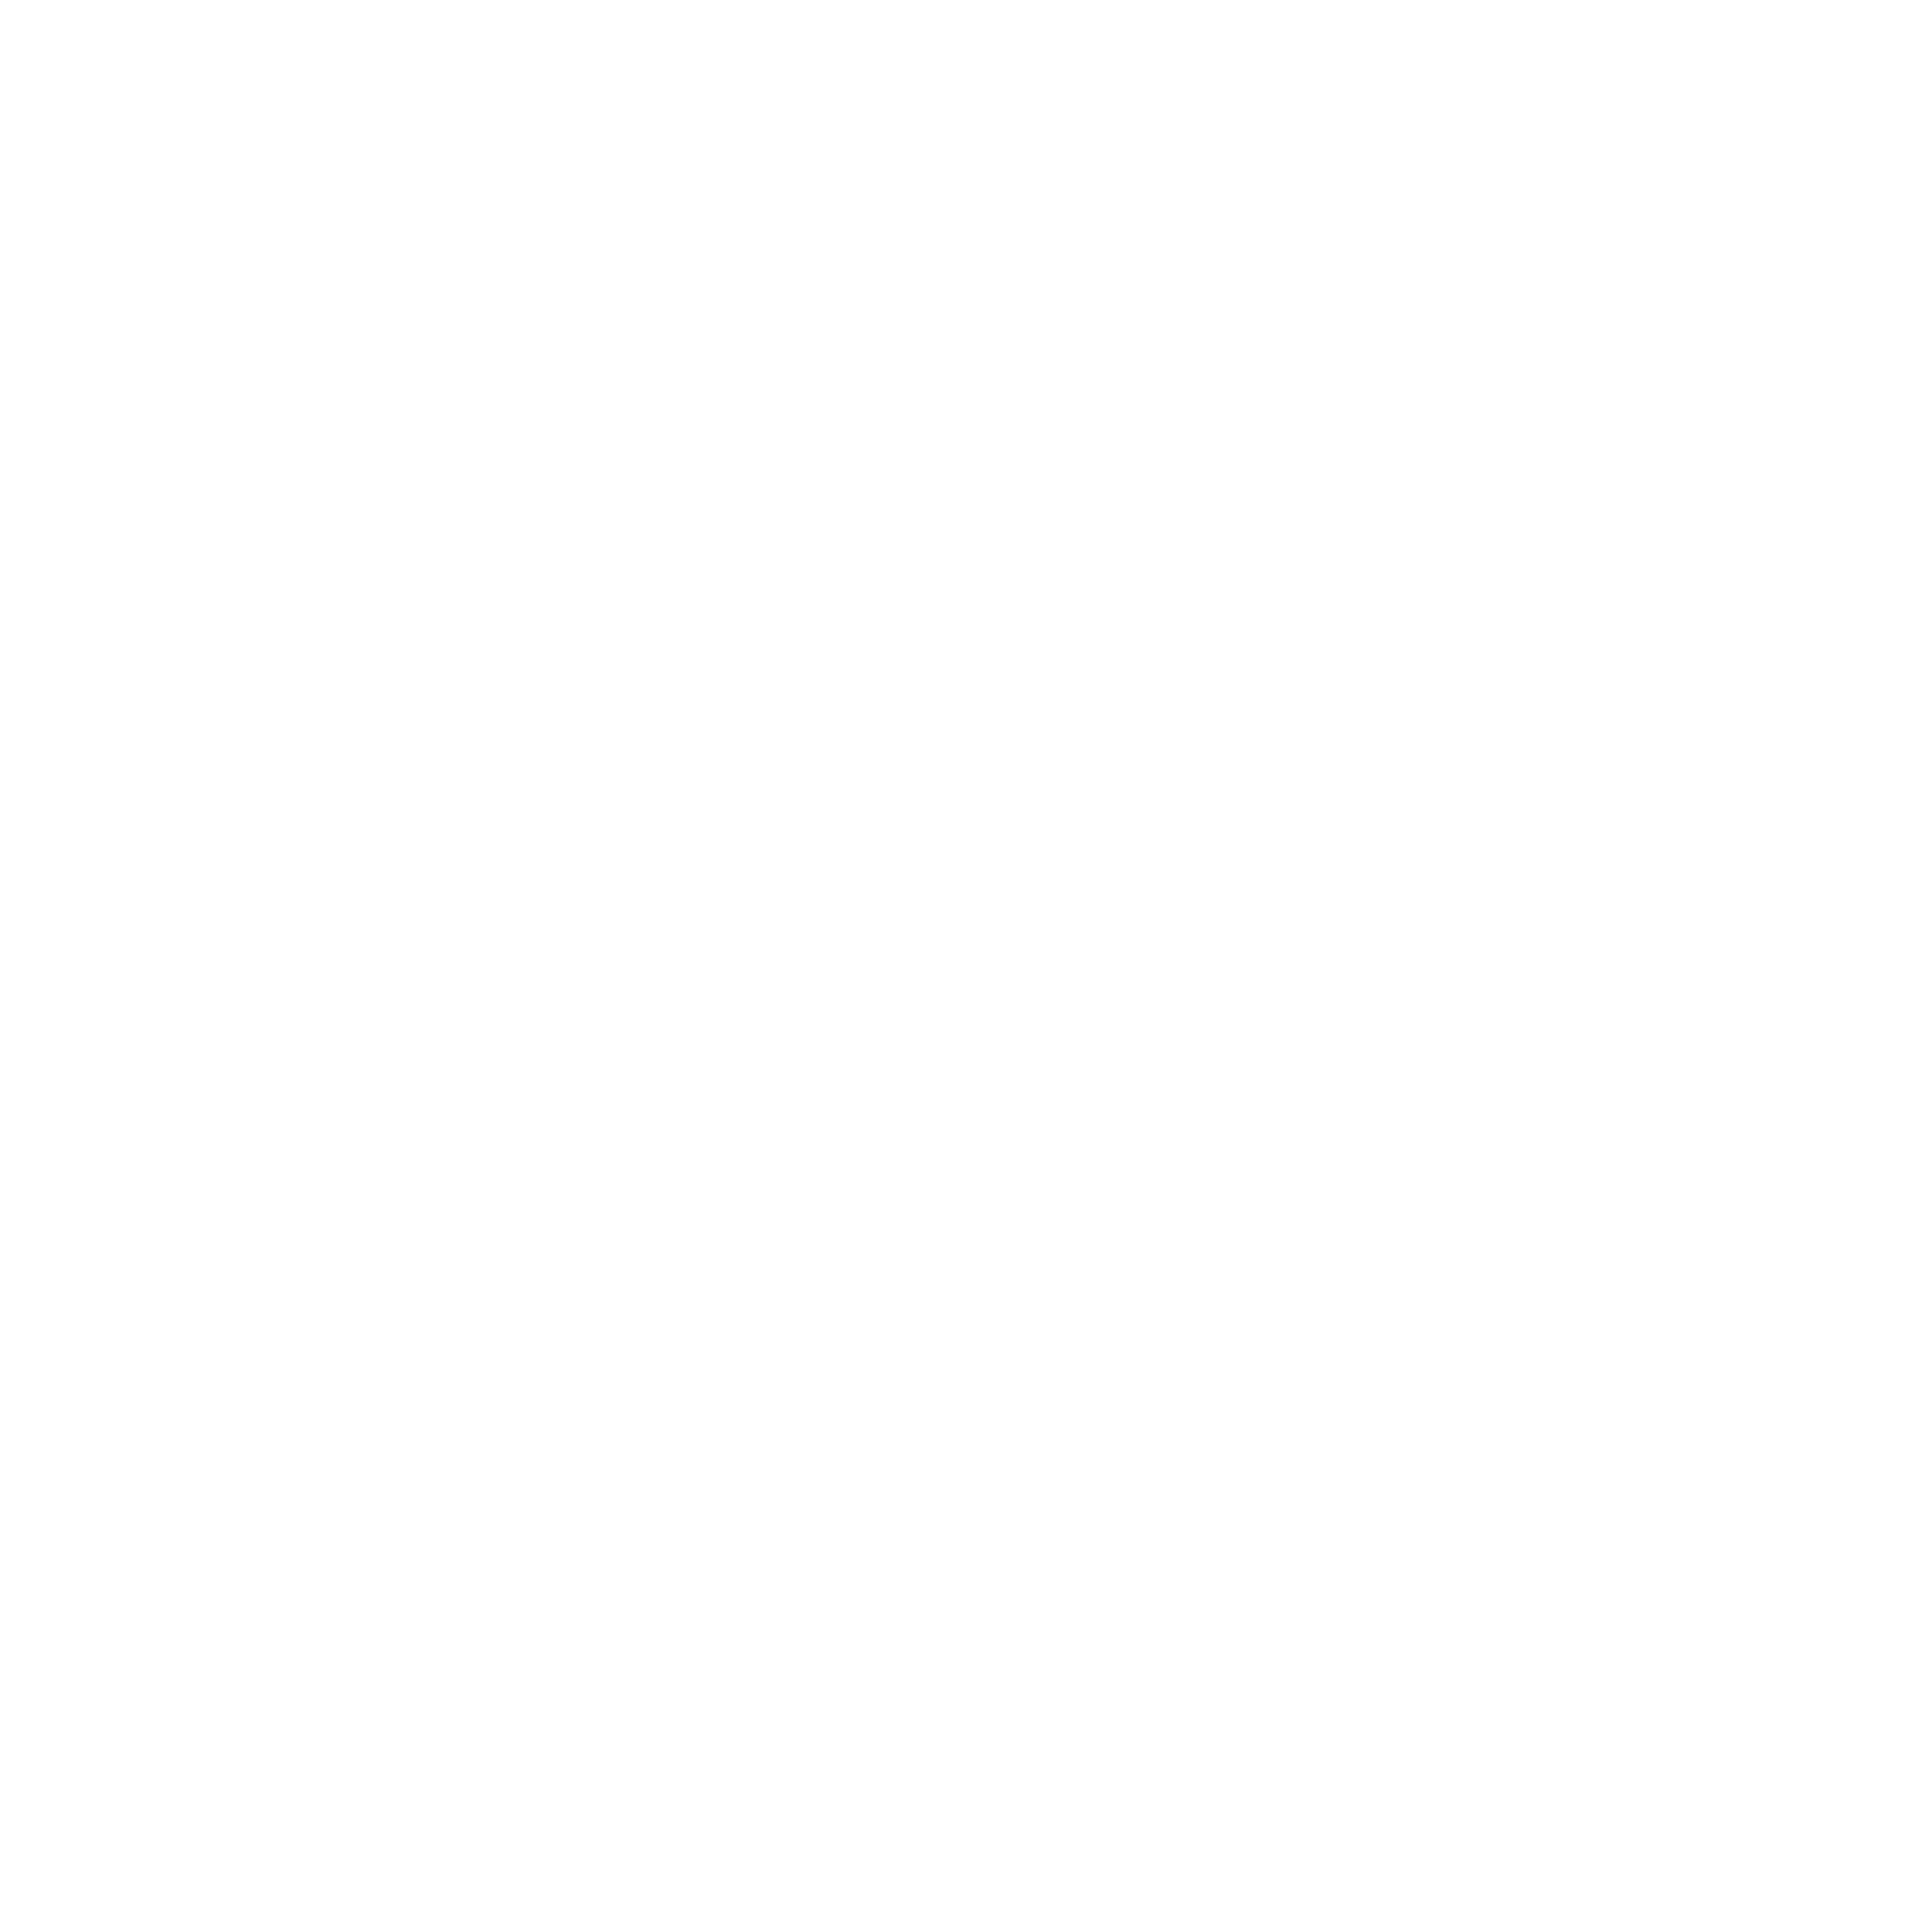 Logo of Foundation of Economic Education